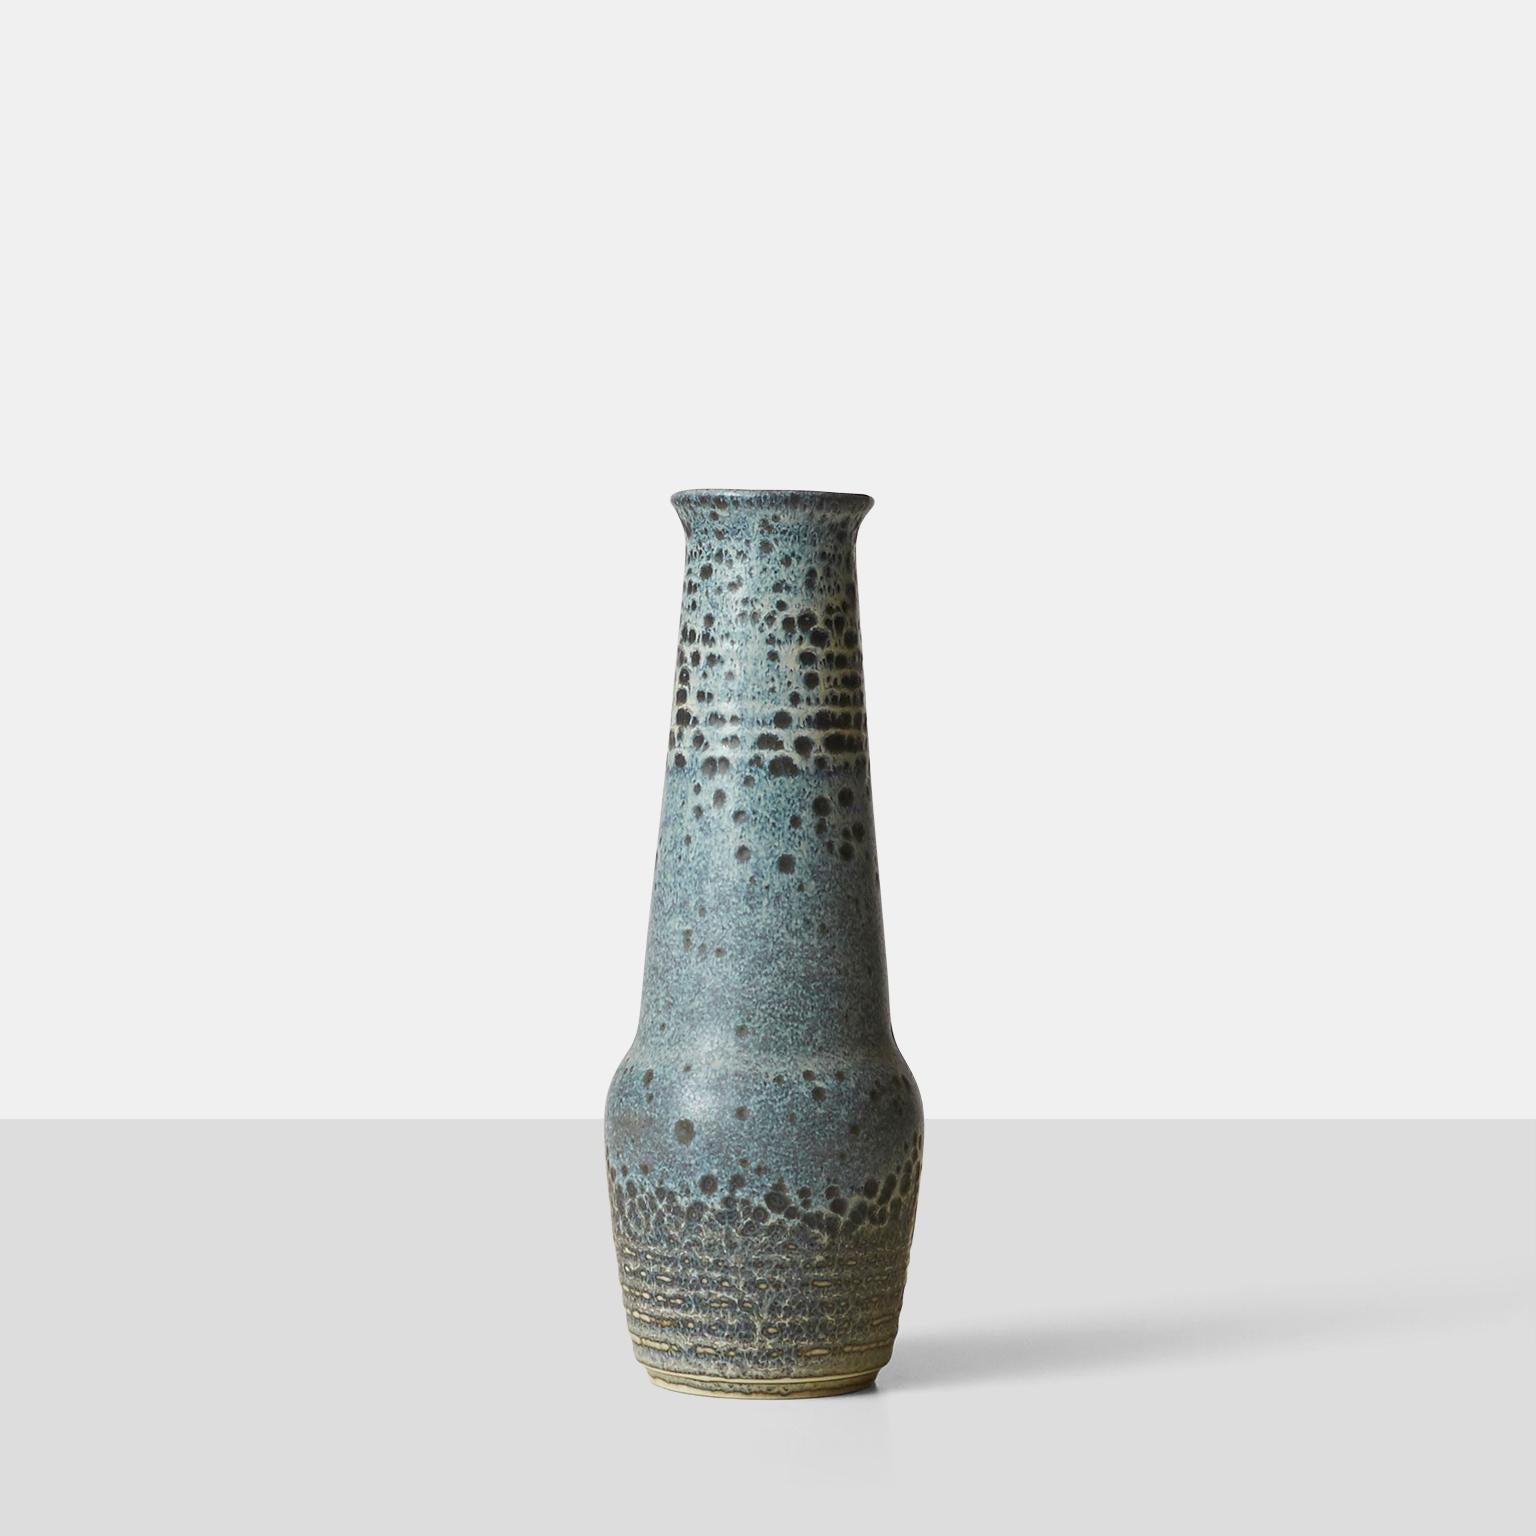 Vase à long col en céramique de Gunnar Nylund avec glaçure bleue et grise tachetée. Incisé avec la marque du fabricant et les initiales du designer 